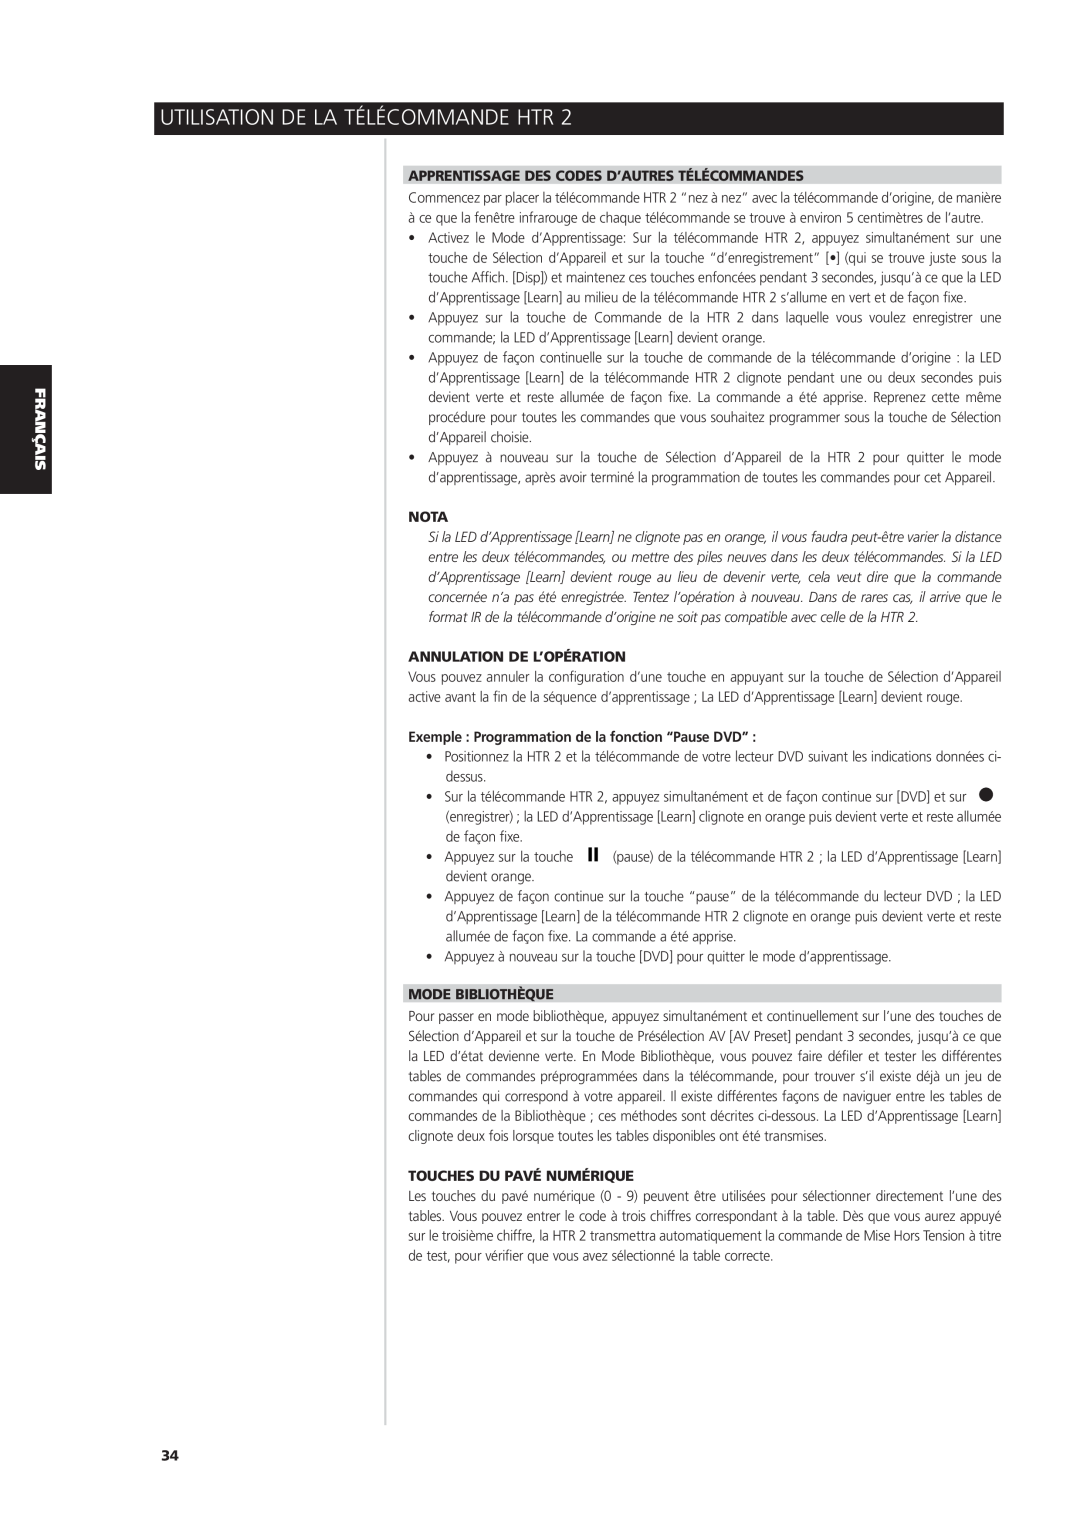 NAD S170iAV owner manual Apprentissage Des Codes D’Autres Télécommandes, Annulation De L’Opération, Mode Bibliothèque, Nota 